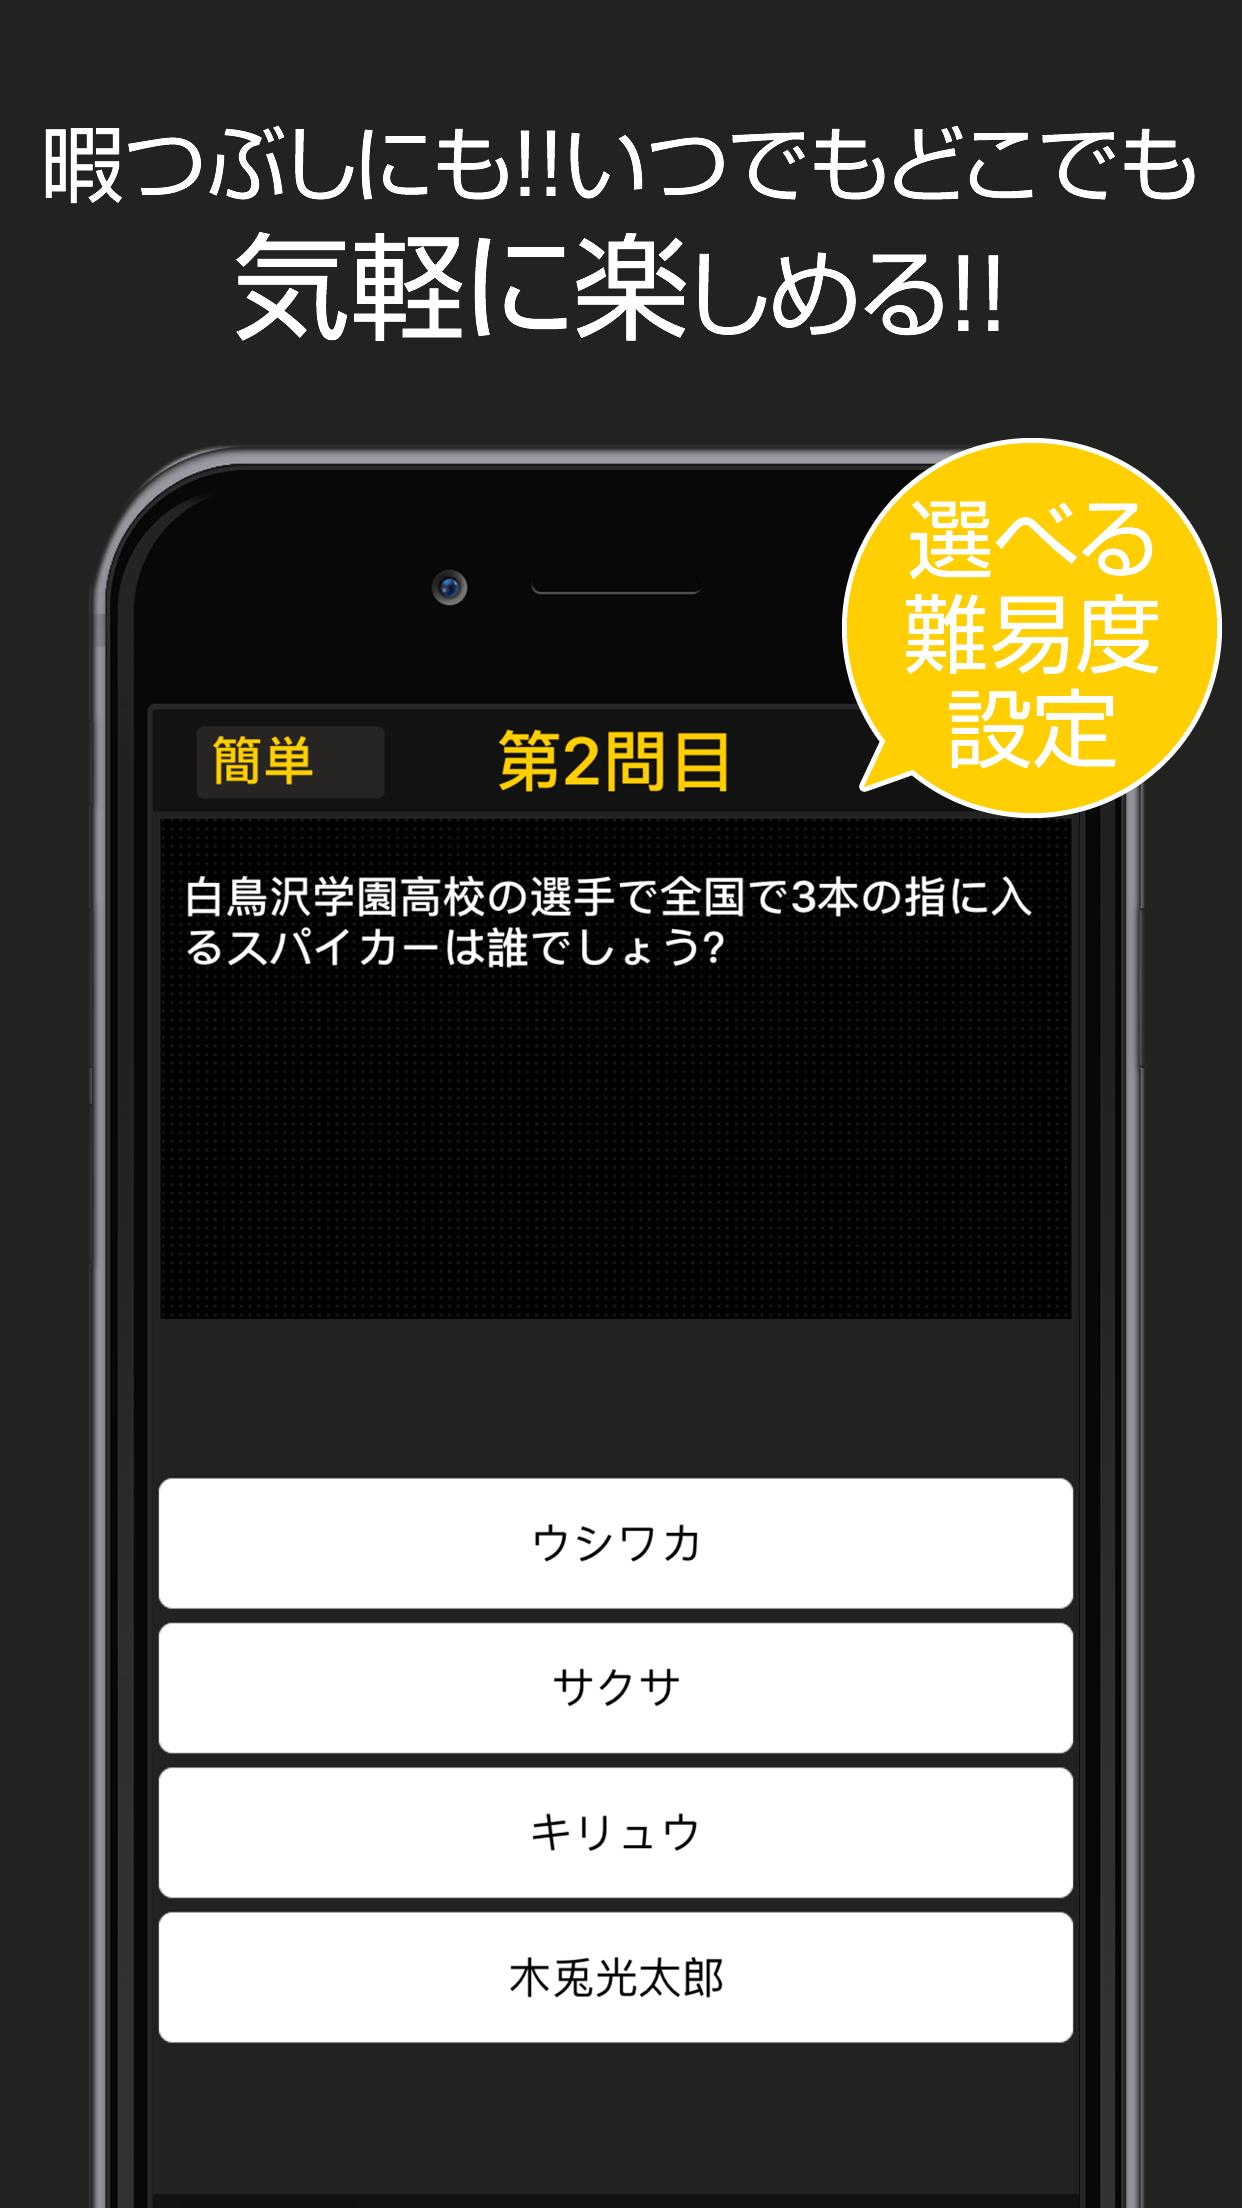 ハイキュー Ver 四択クイズ For Android Apk Download